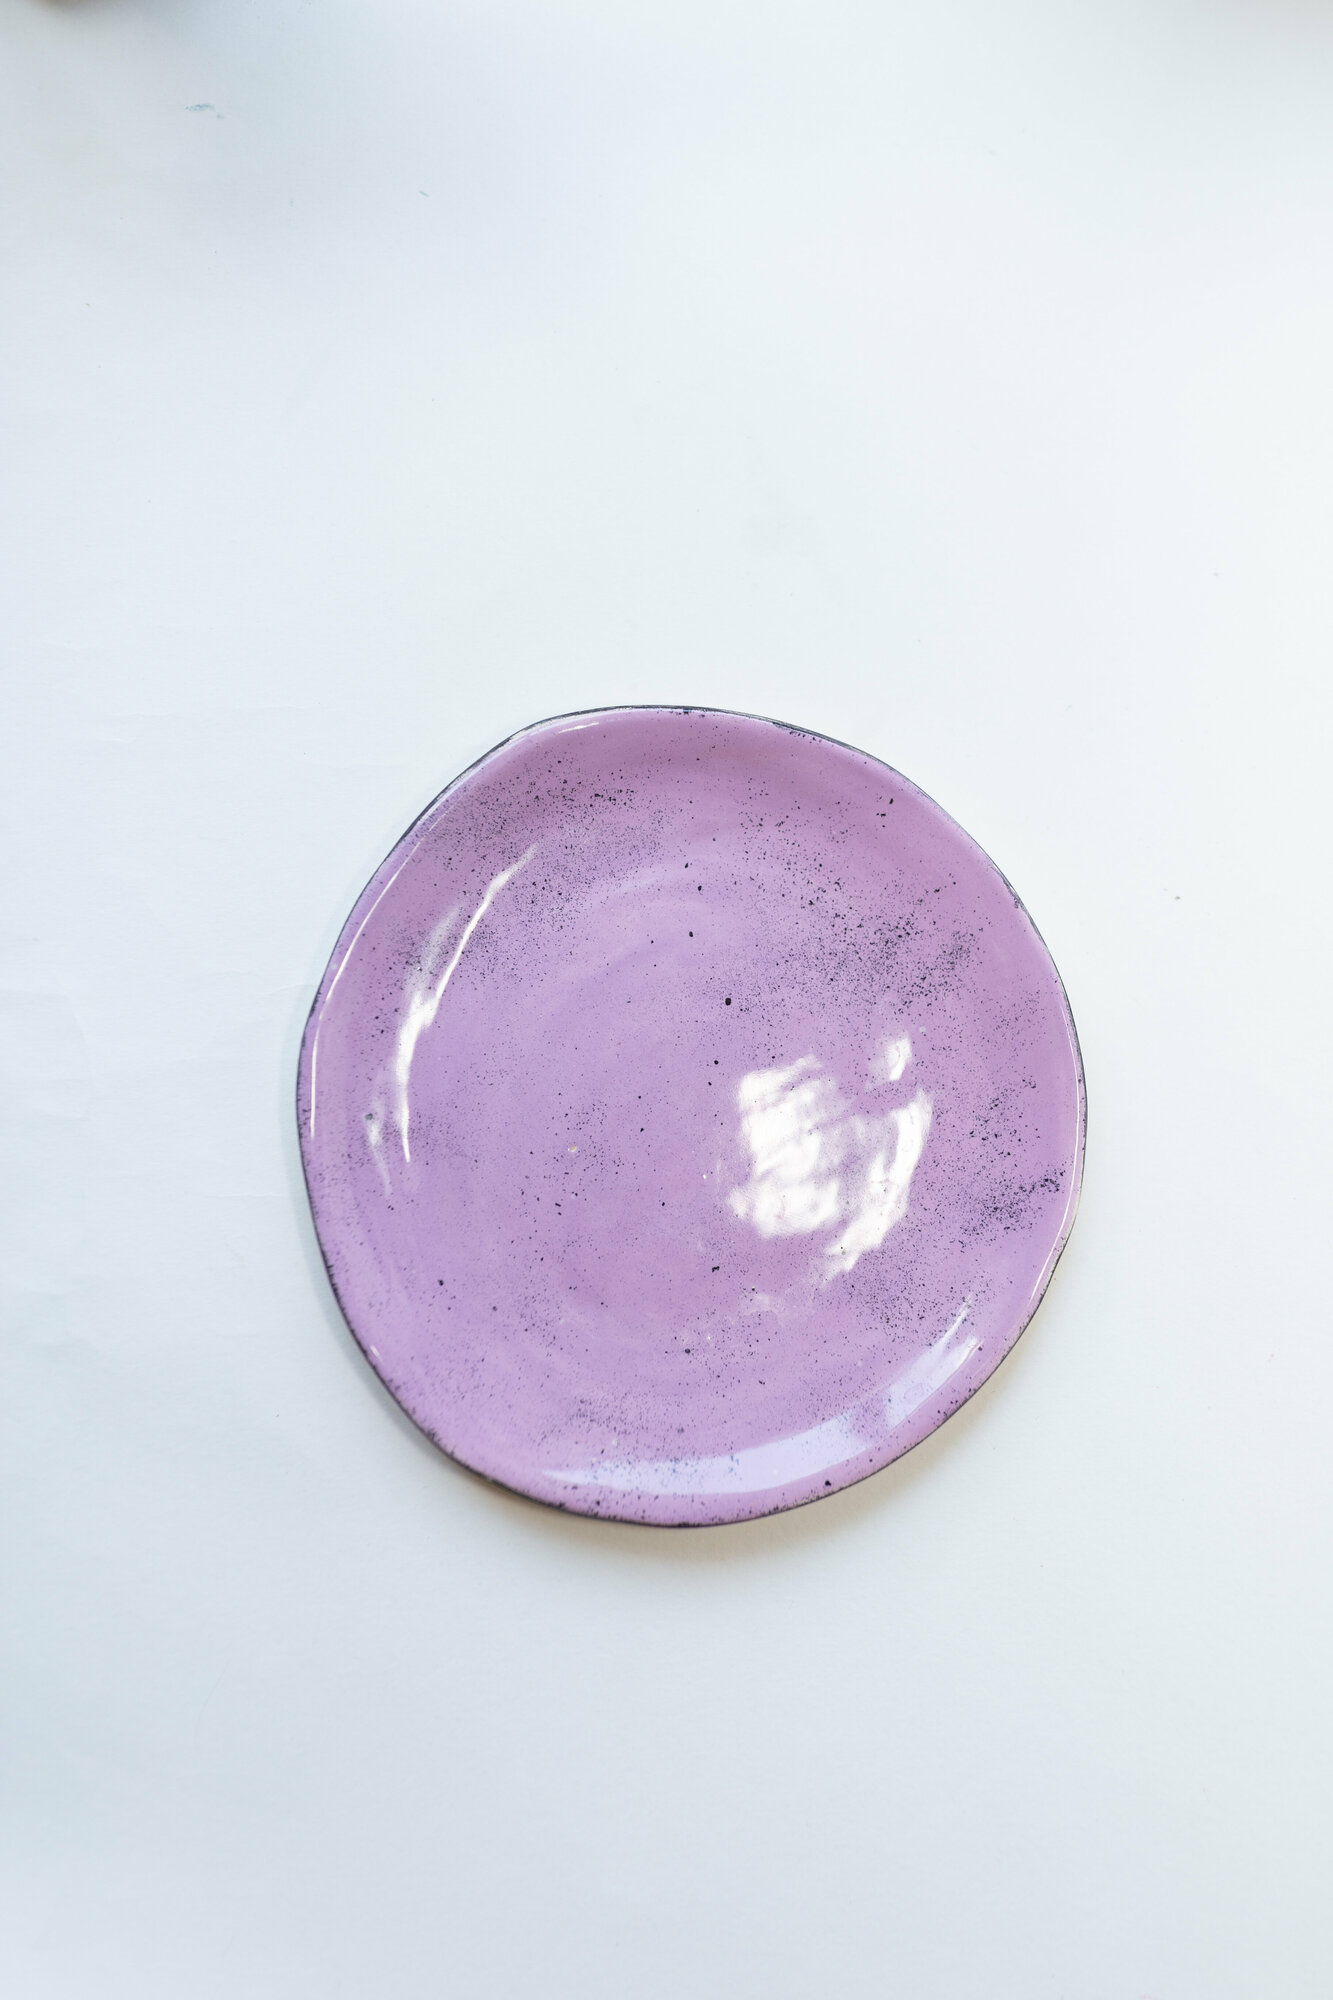 Керамическая десертная тарелка "Лавандовый десерт", "Валюшка в стране керамики", ручная лепка из керамического пласта, диаметр 20,5 см